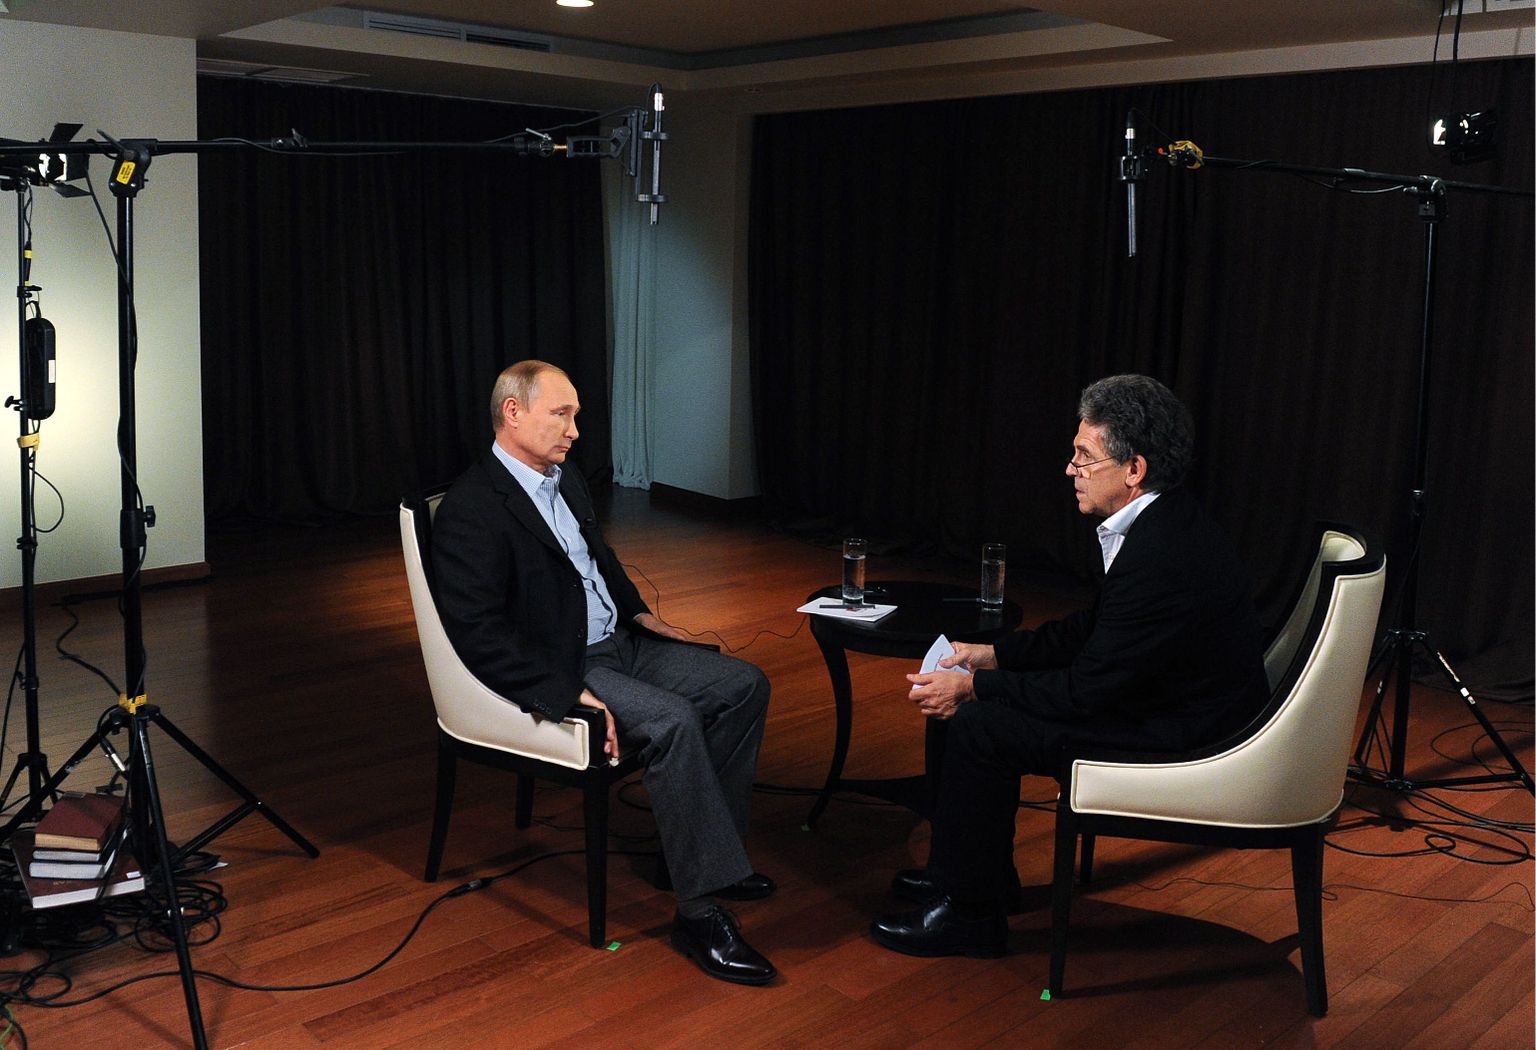 Vene president paari nädala eest Vladivostokis Saksa avalik-õigusliku telekanali ARD saatejuhile Hubert Seipelile intervjuud andmas.